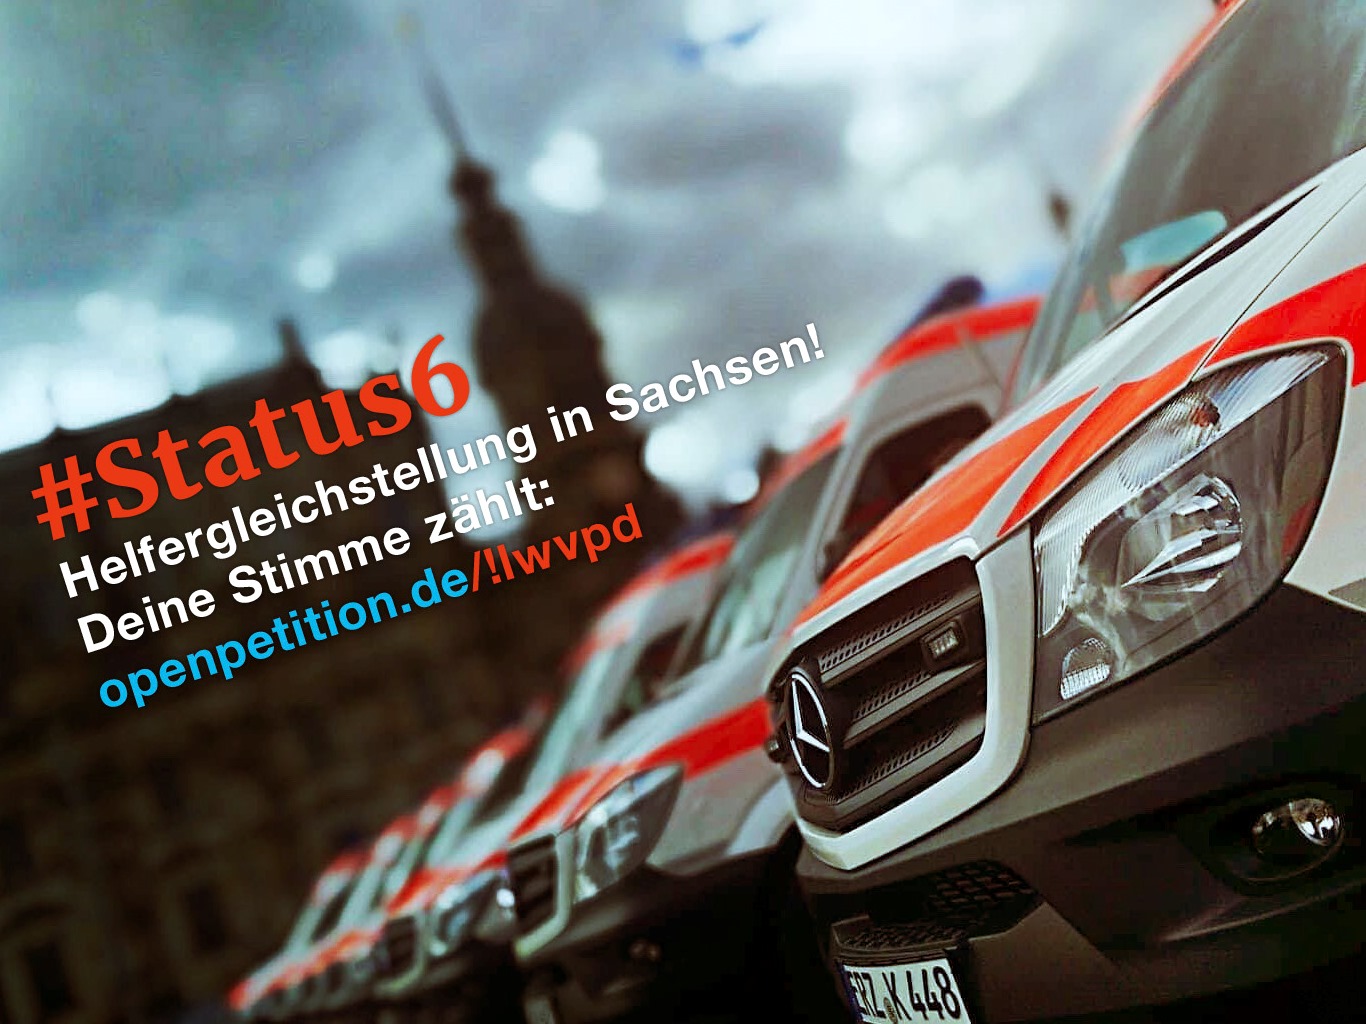 Eine Reihe von Rettungswagen unter dramatischem Himmel ist zu sehen. Quer über dem Bild steht "#Status6 Helfergleichstellung in Sachsen! Deine Stimme zählt:" Darunter ist der Link zur entsprechenden Petition angegeben. 